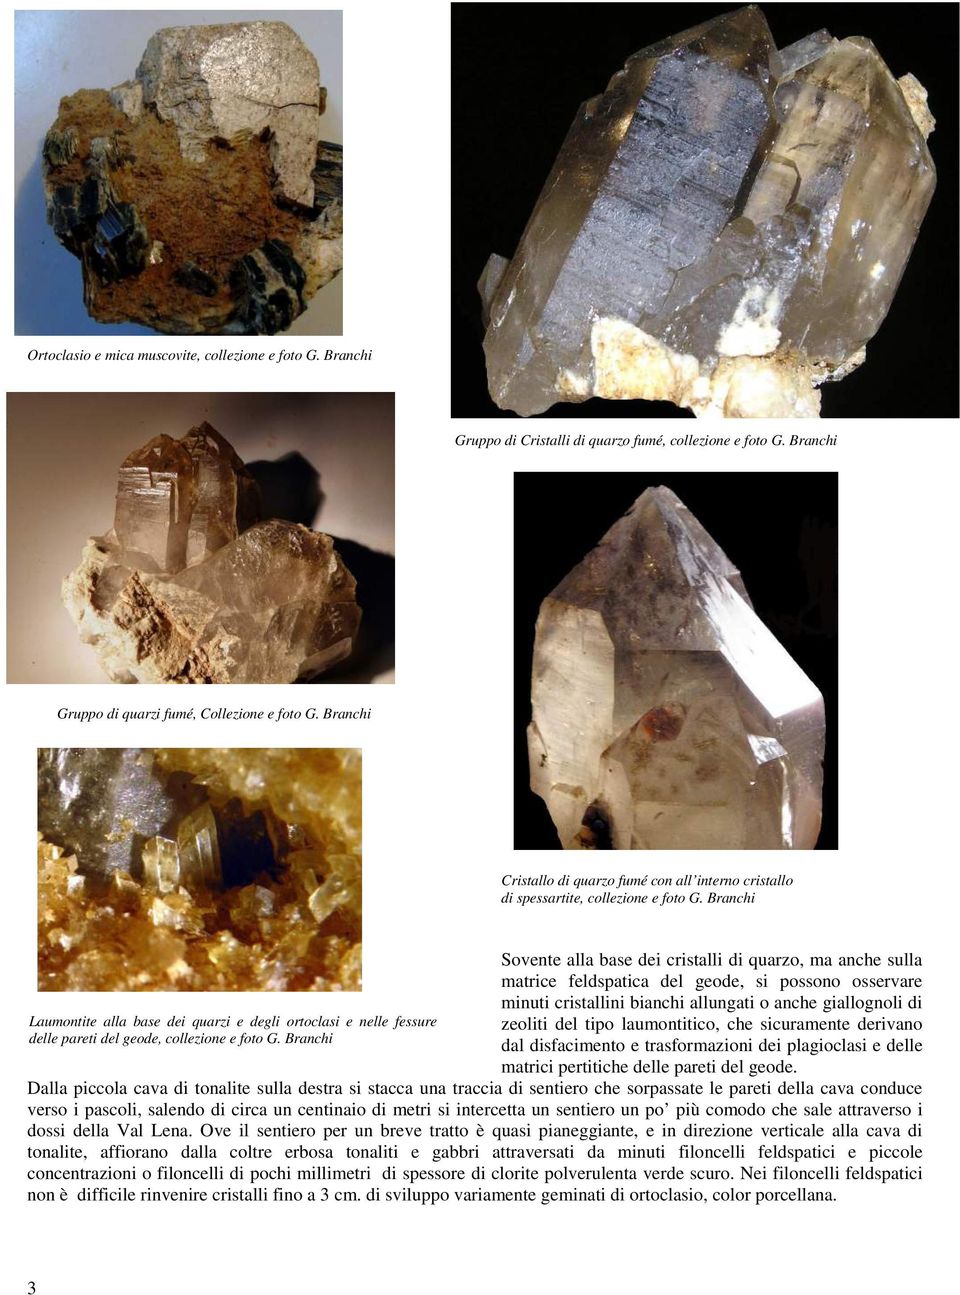 Sovente alla base dei cristalli di quarzo, ma anche sulla matrice feldspatica del geode, si possono osservare minuti cristallini bianchi allungati o anche giallognoli di zeoliti del tipo